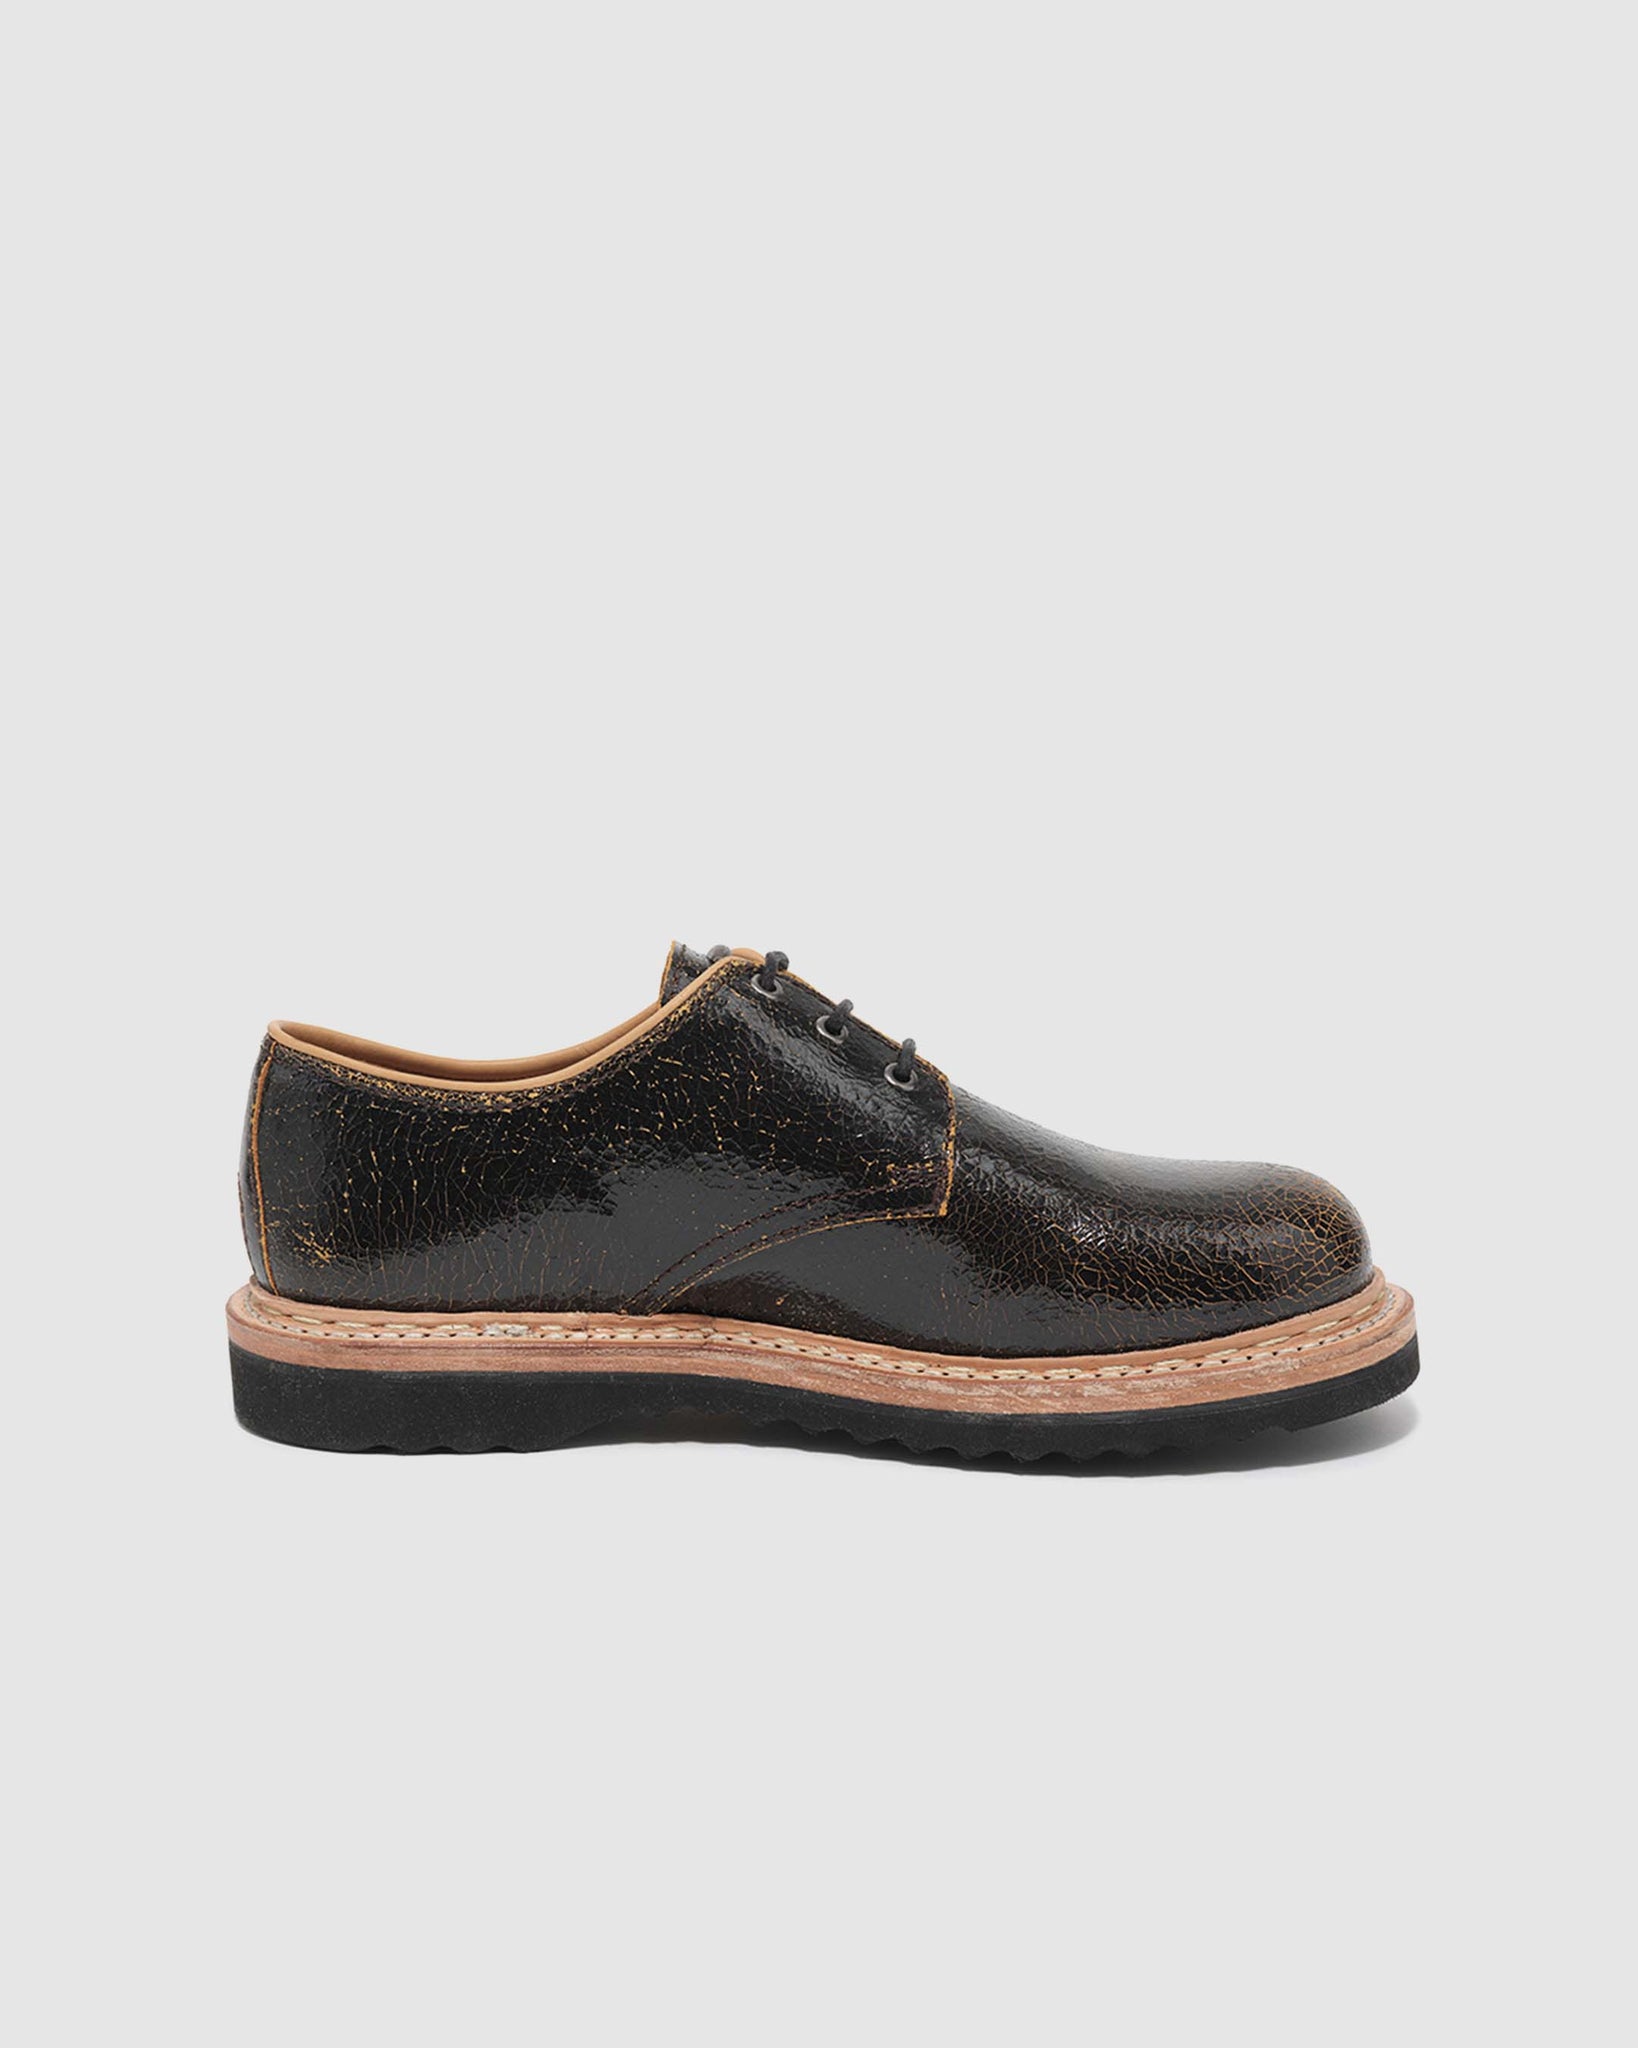 Trampler Shoe - Fractured Black Leather